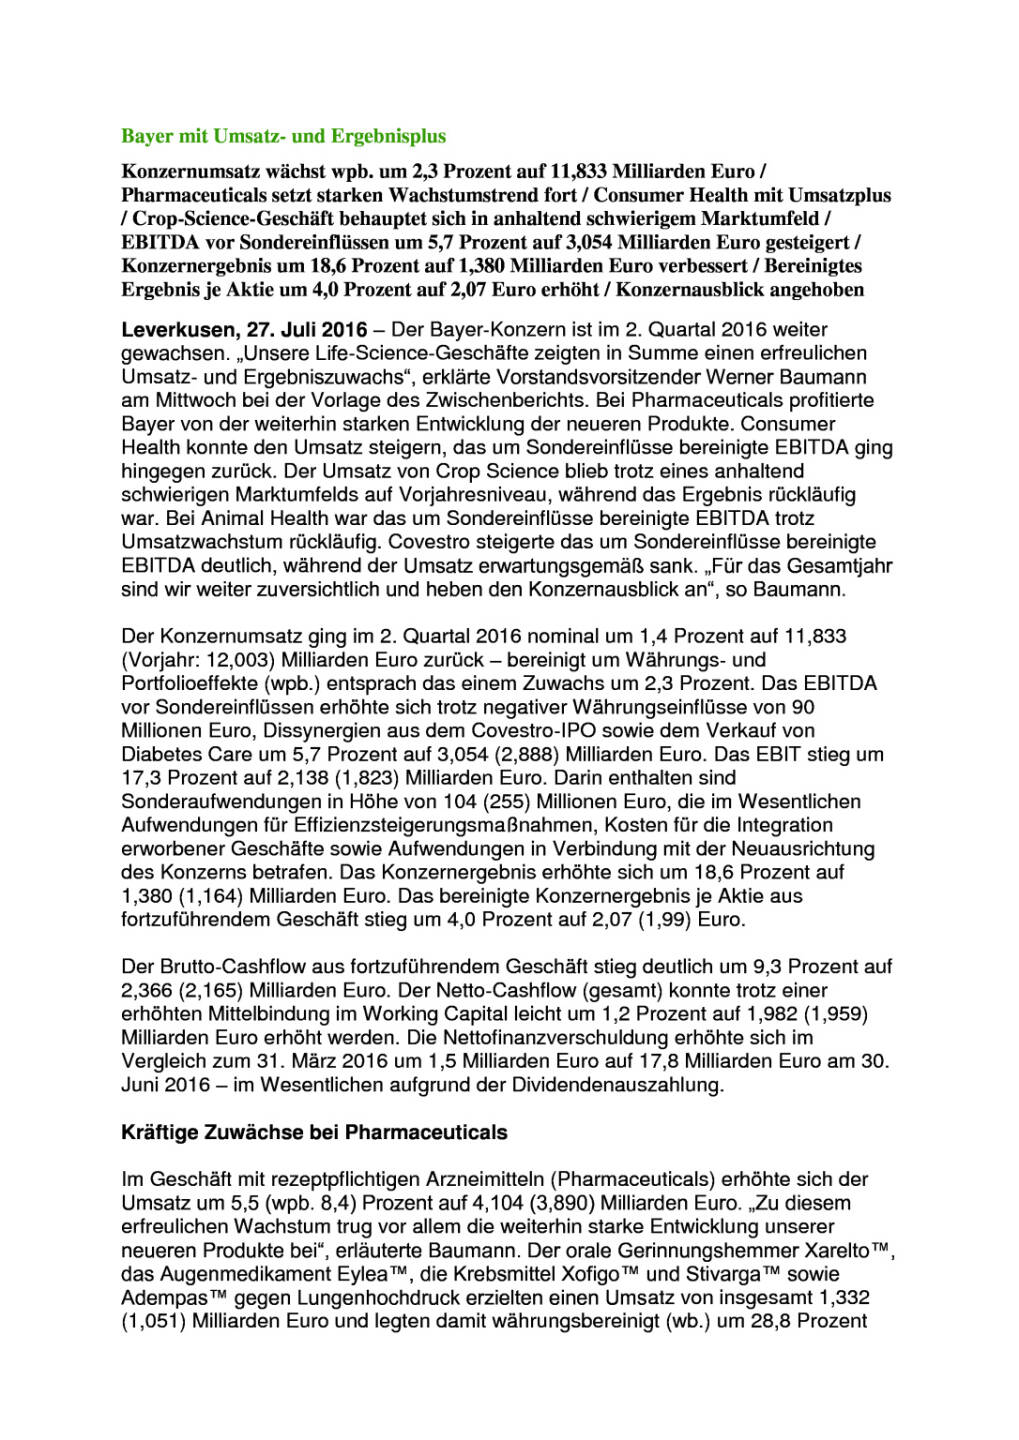 Bayer mit Umsatz- und Ergebnisplus, Seite 1/7, komplettes Dokument unter http://boerse-social.com/static/uploads/file_1498_bayer_mit_umsatz-_und_ergebnisplus.pdf